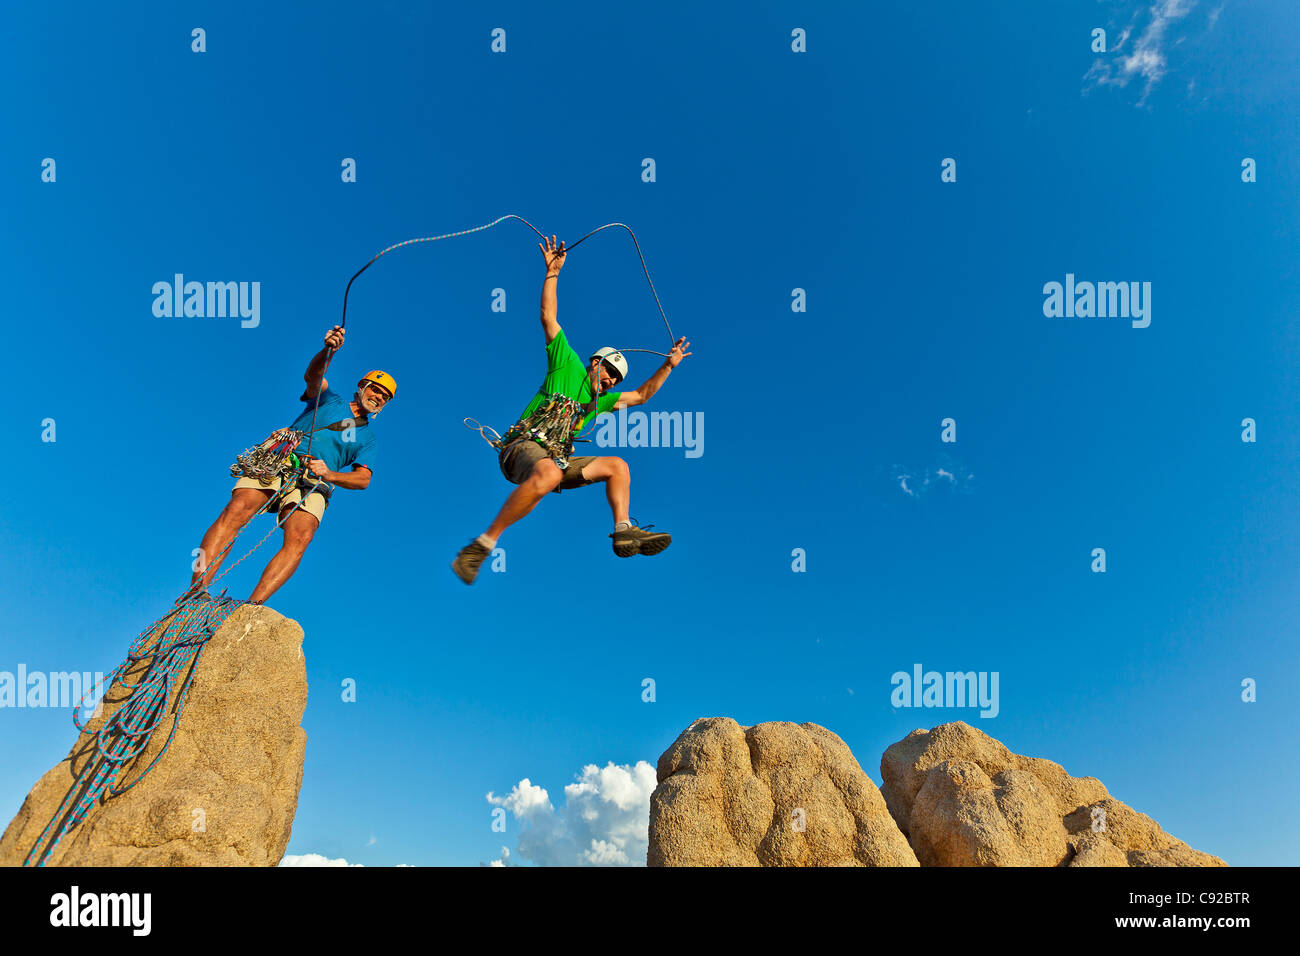 Team di scalatori nella lotta per il vertice di un pinnacolo di roccia dopo una impegnativa salita. Foto Stock